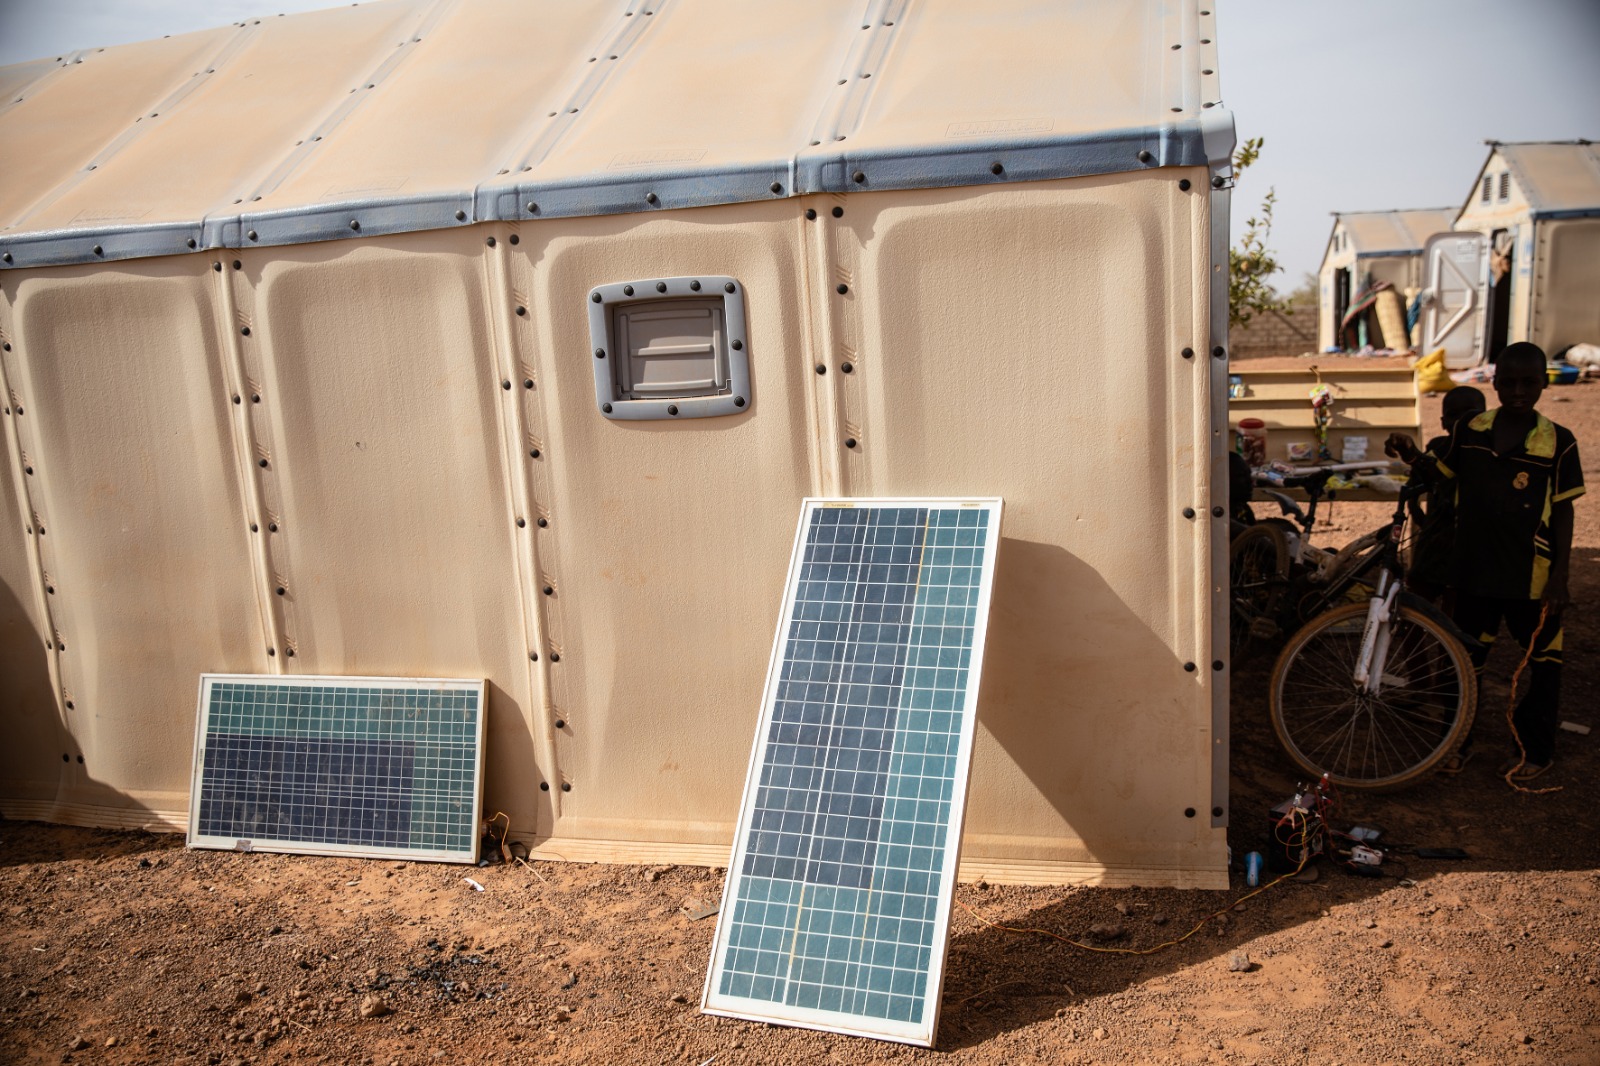 Les deux plaques solaires de Sambo permettent de recharger les téléphones des déplacés du camp. Kaya, le 10 mars 2020.